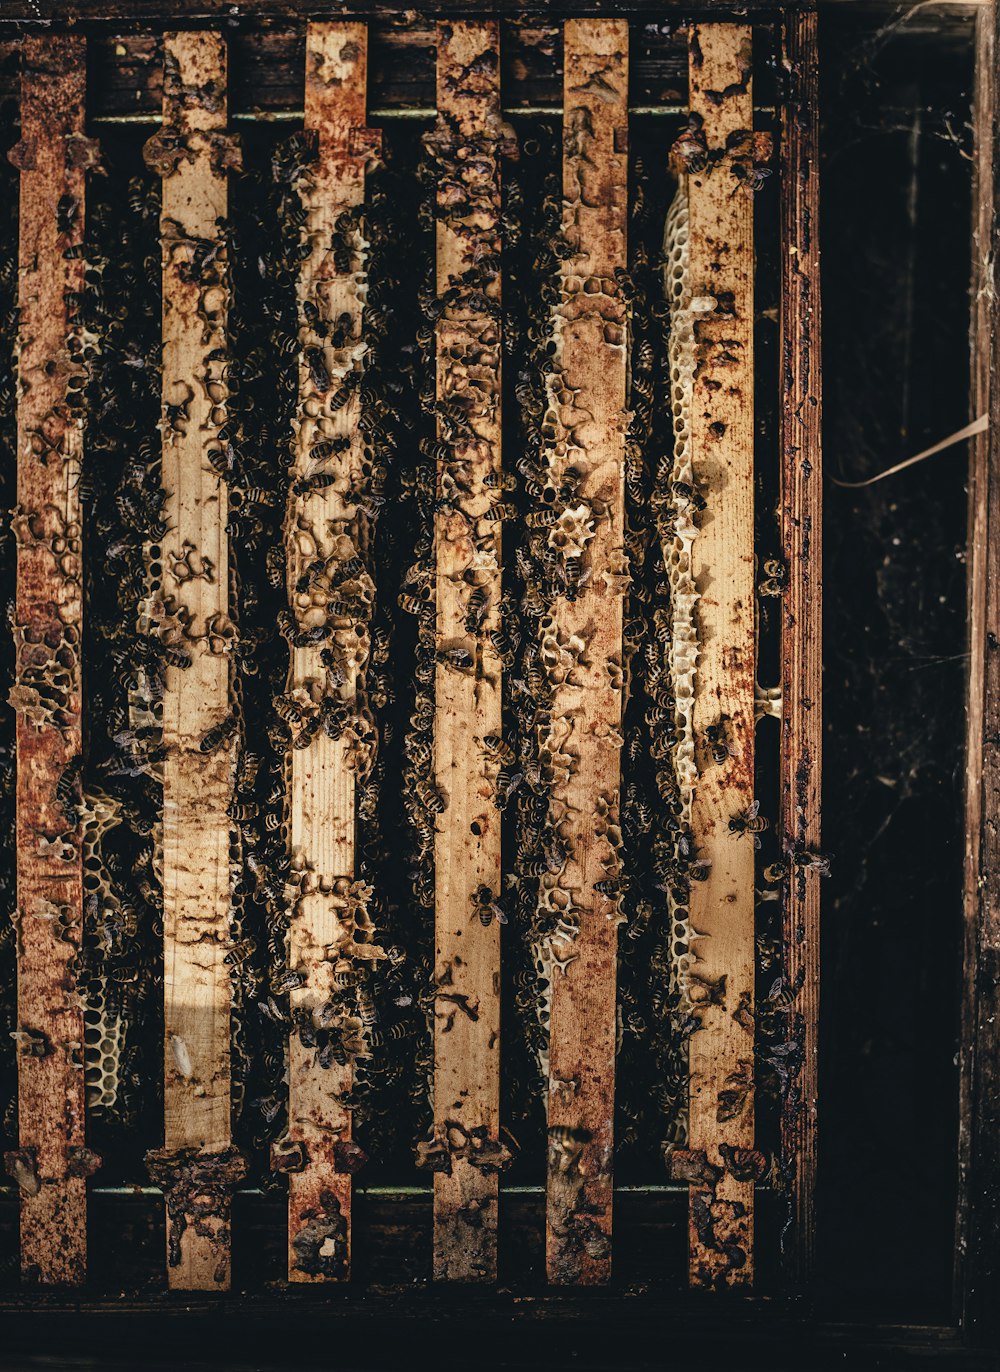 木の檻の中のミツバチ